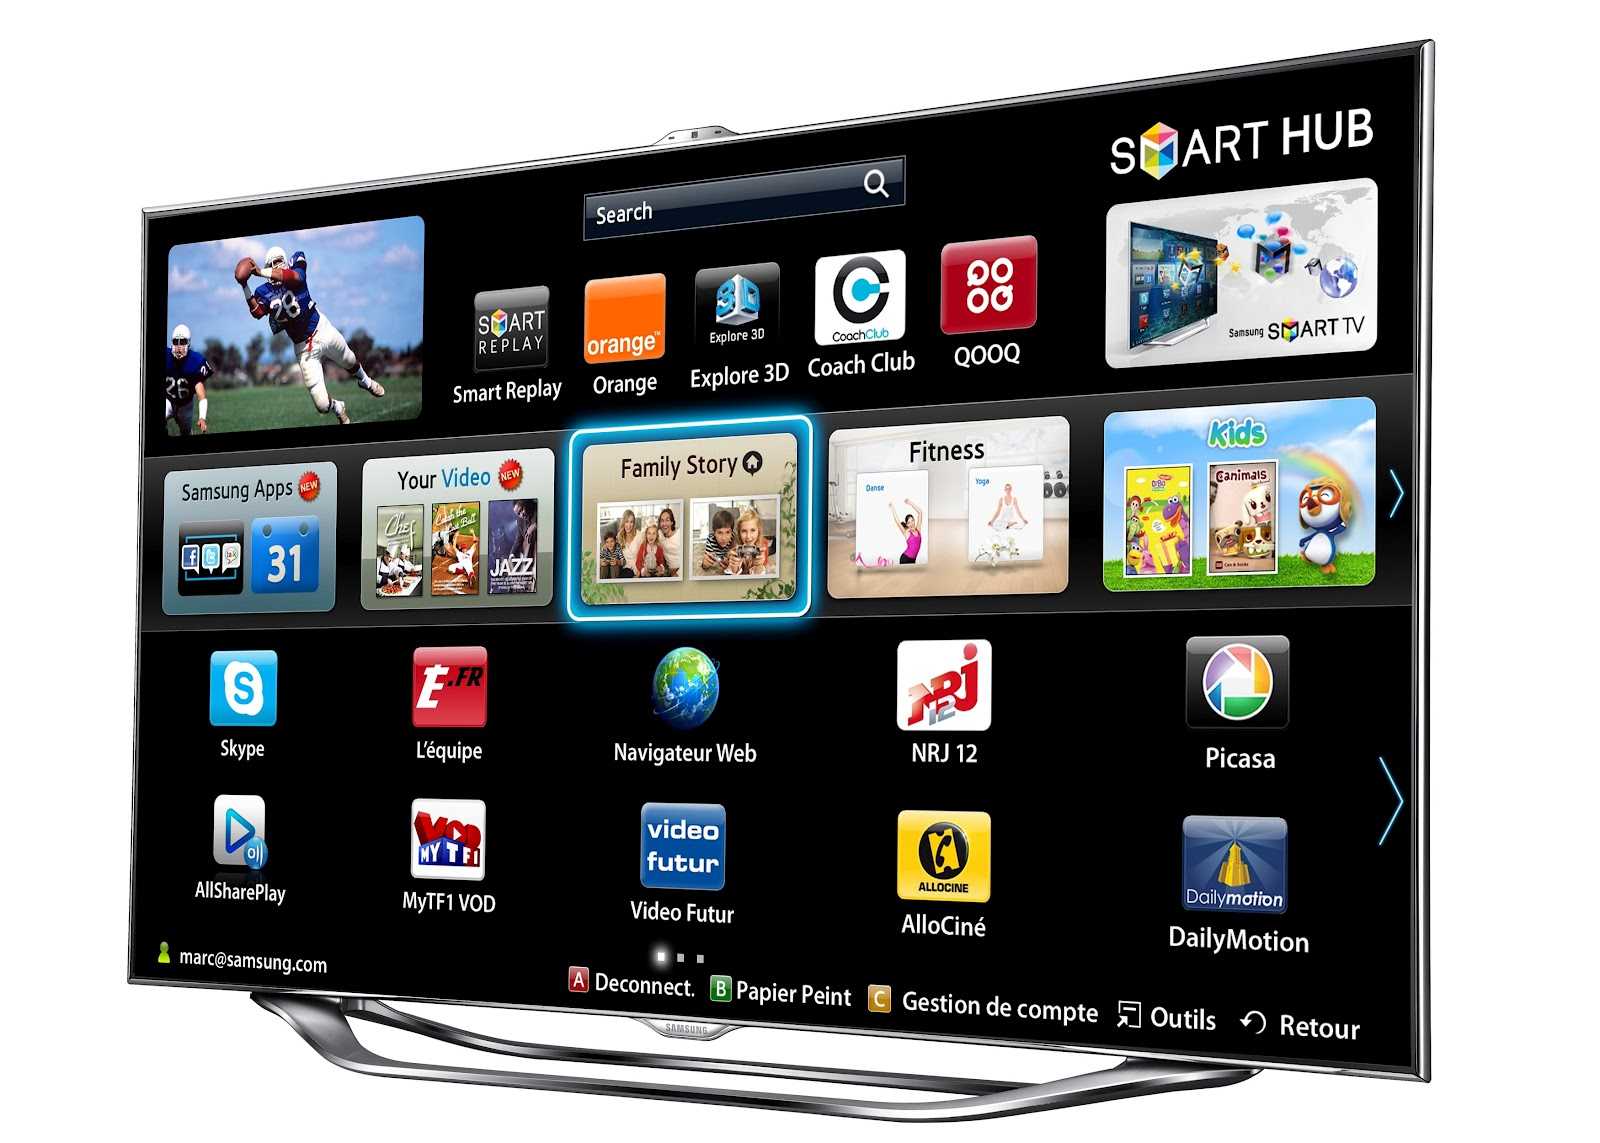 Купить телевизор со смарт тв в москве. Samsung Smart TV. Смарт хаб смарт ТВ самсунг. Samsung Smart TV ue46es8000. Телевизор самсунг смарт ТВ 42.